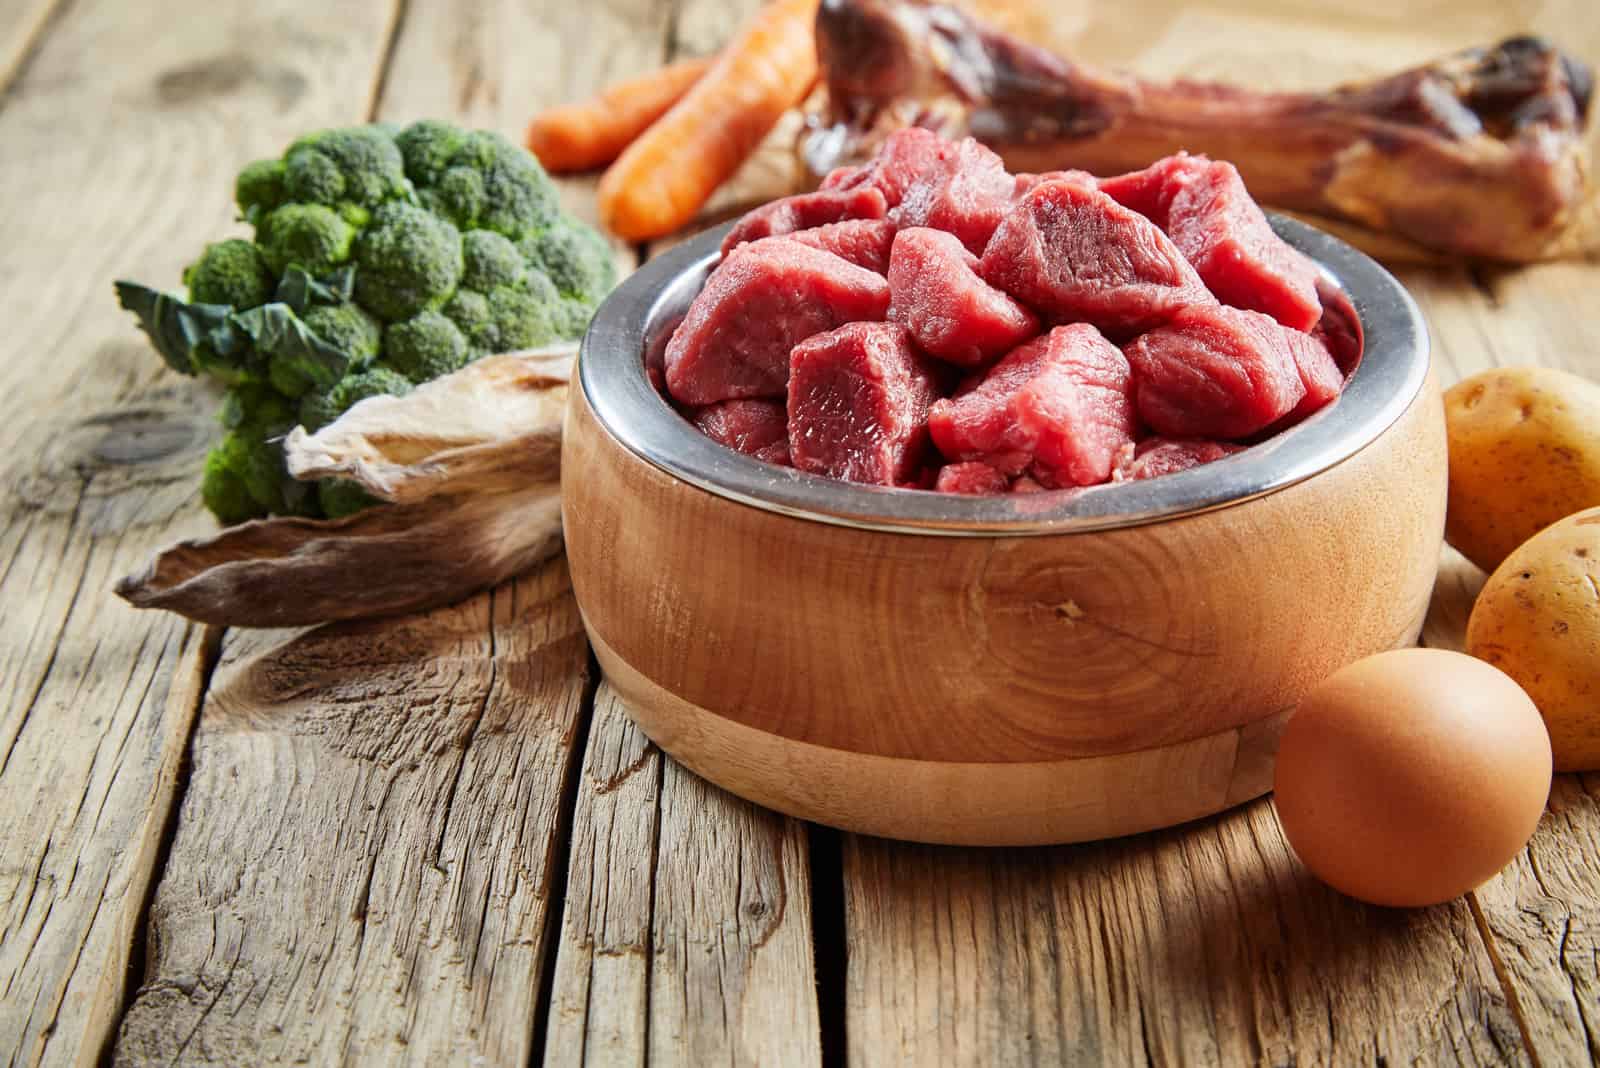 Frisches Futter für ein gesundes Haustier mit gehacktem Rindfleisch, Eiern, Brokkoli, Gemüse und einem großen Fleischknochen auf einem rustikalen Holzboden